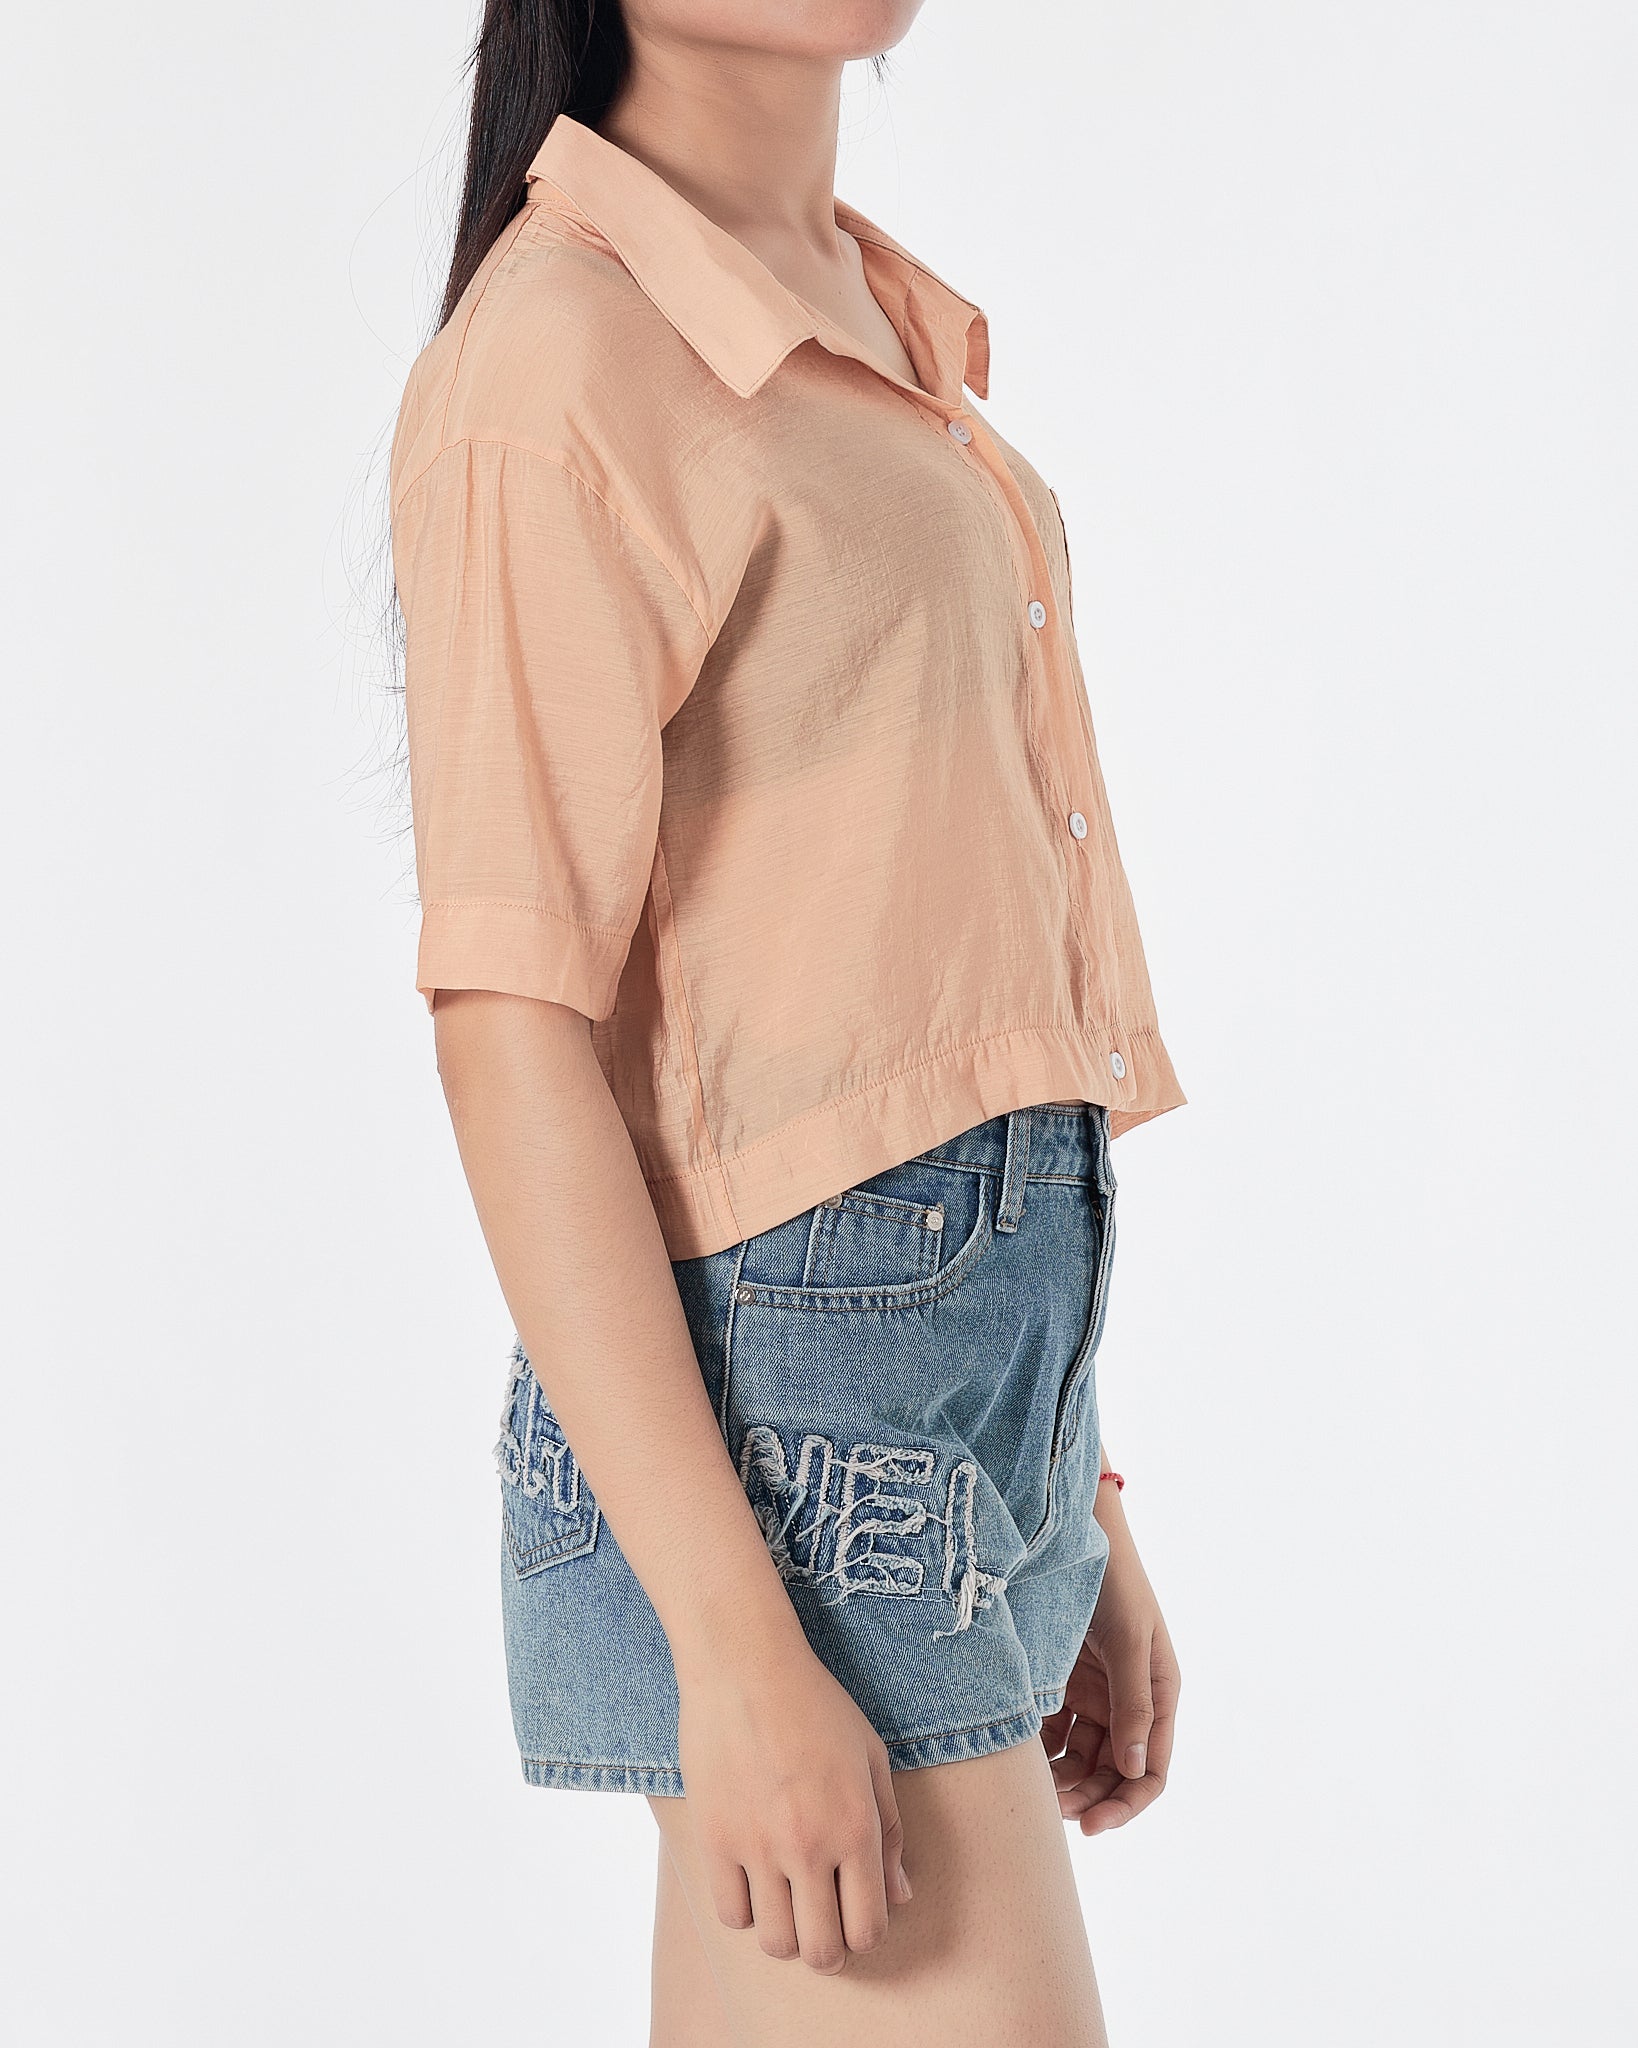 Plain Color Orange Lady Shirts Short Sleeve 12.90